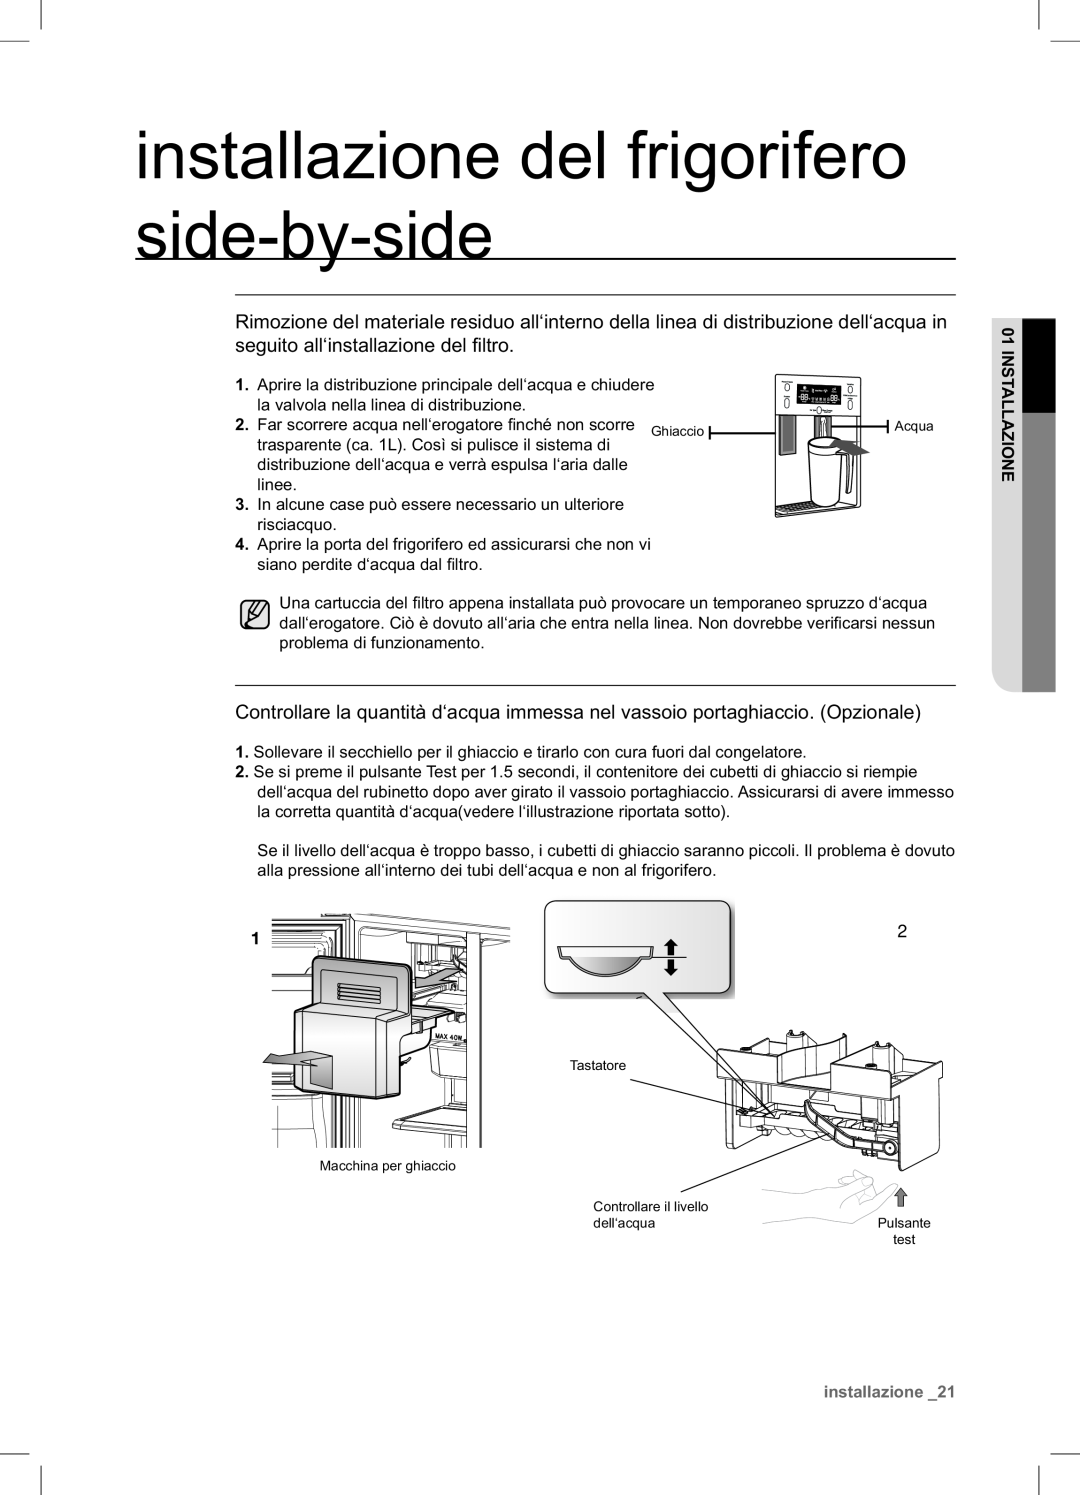 Samsung RSA1NTPE1/XES installazione del frigorifero side-by-side, Aprire la distribuzione principale dell‘acqua e chiudere 